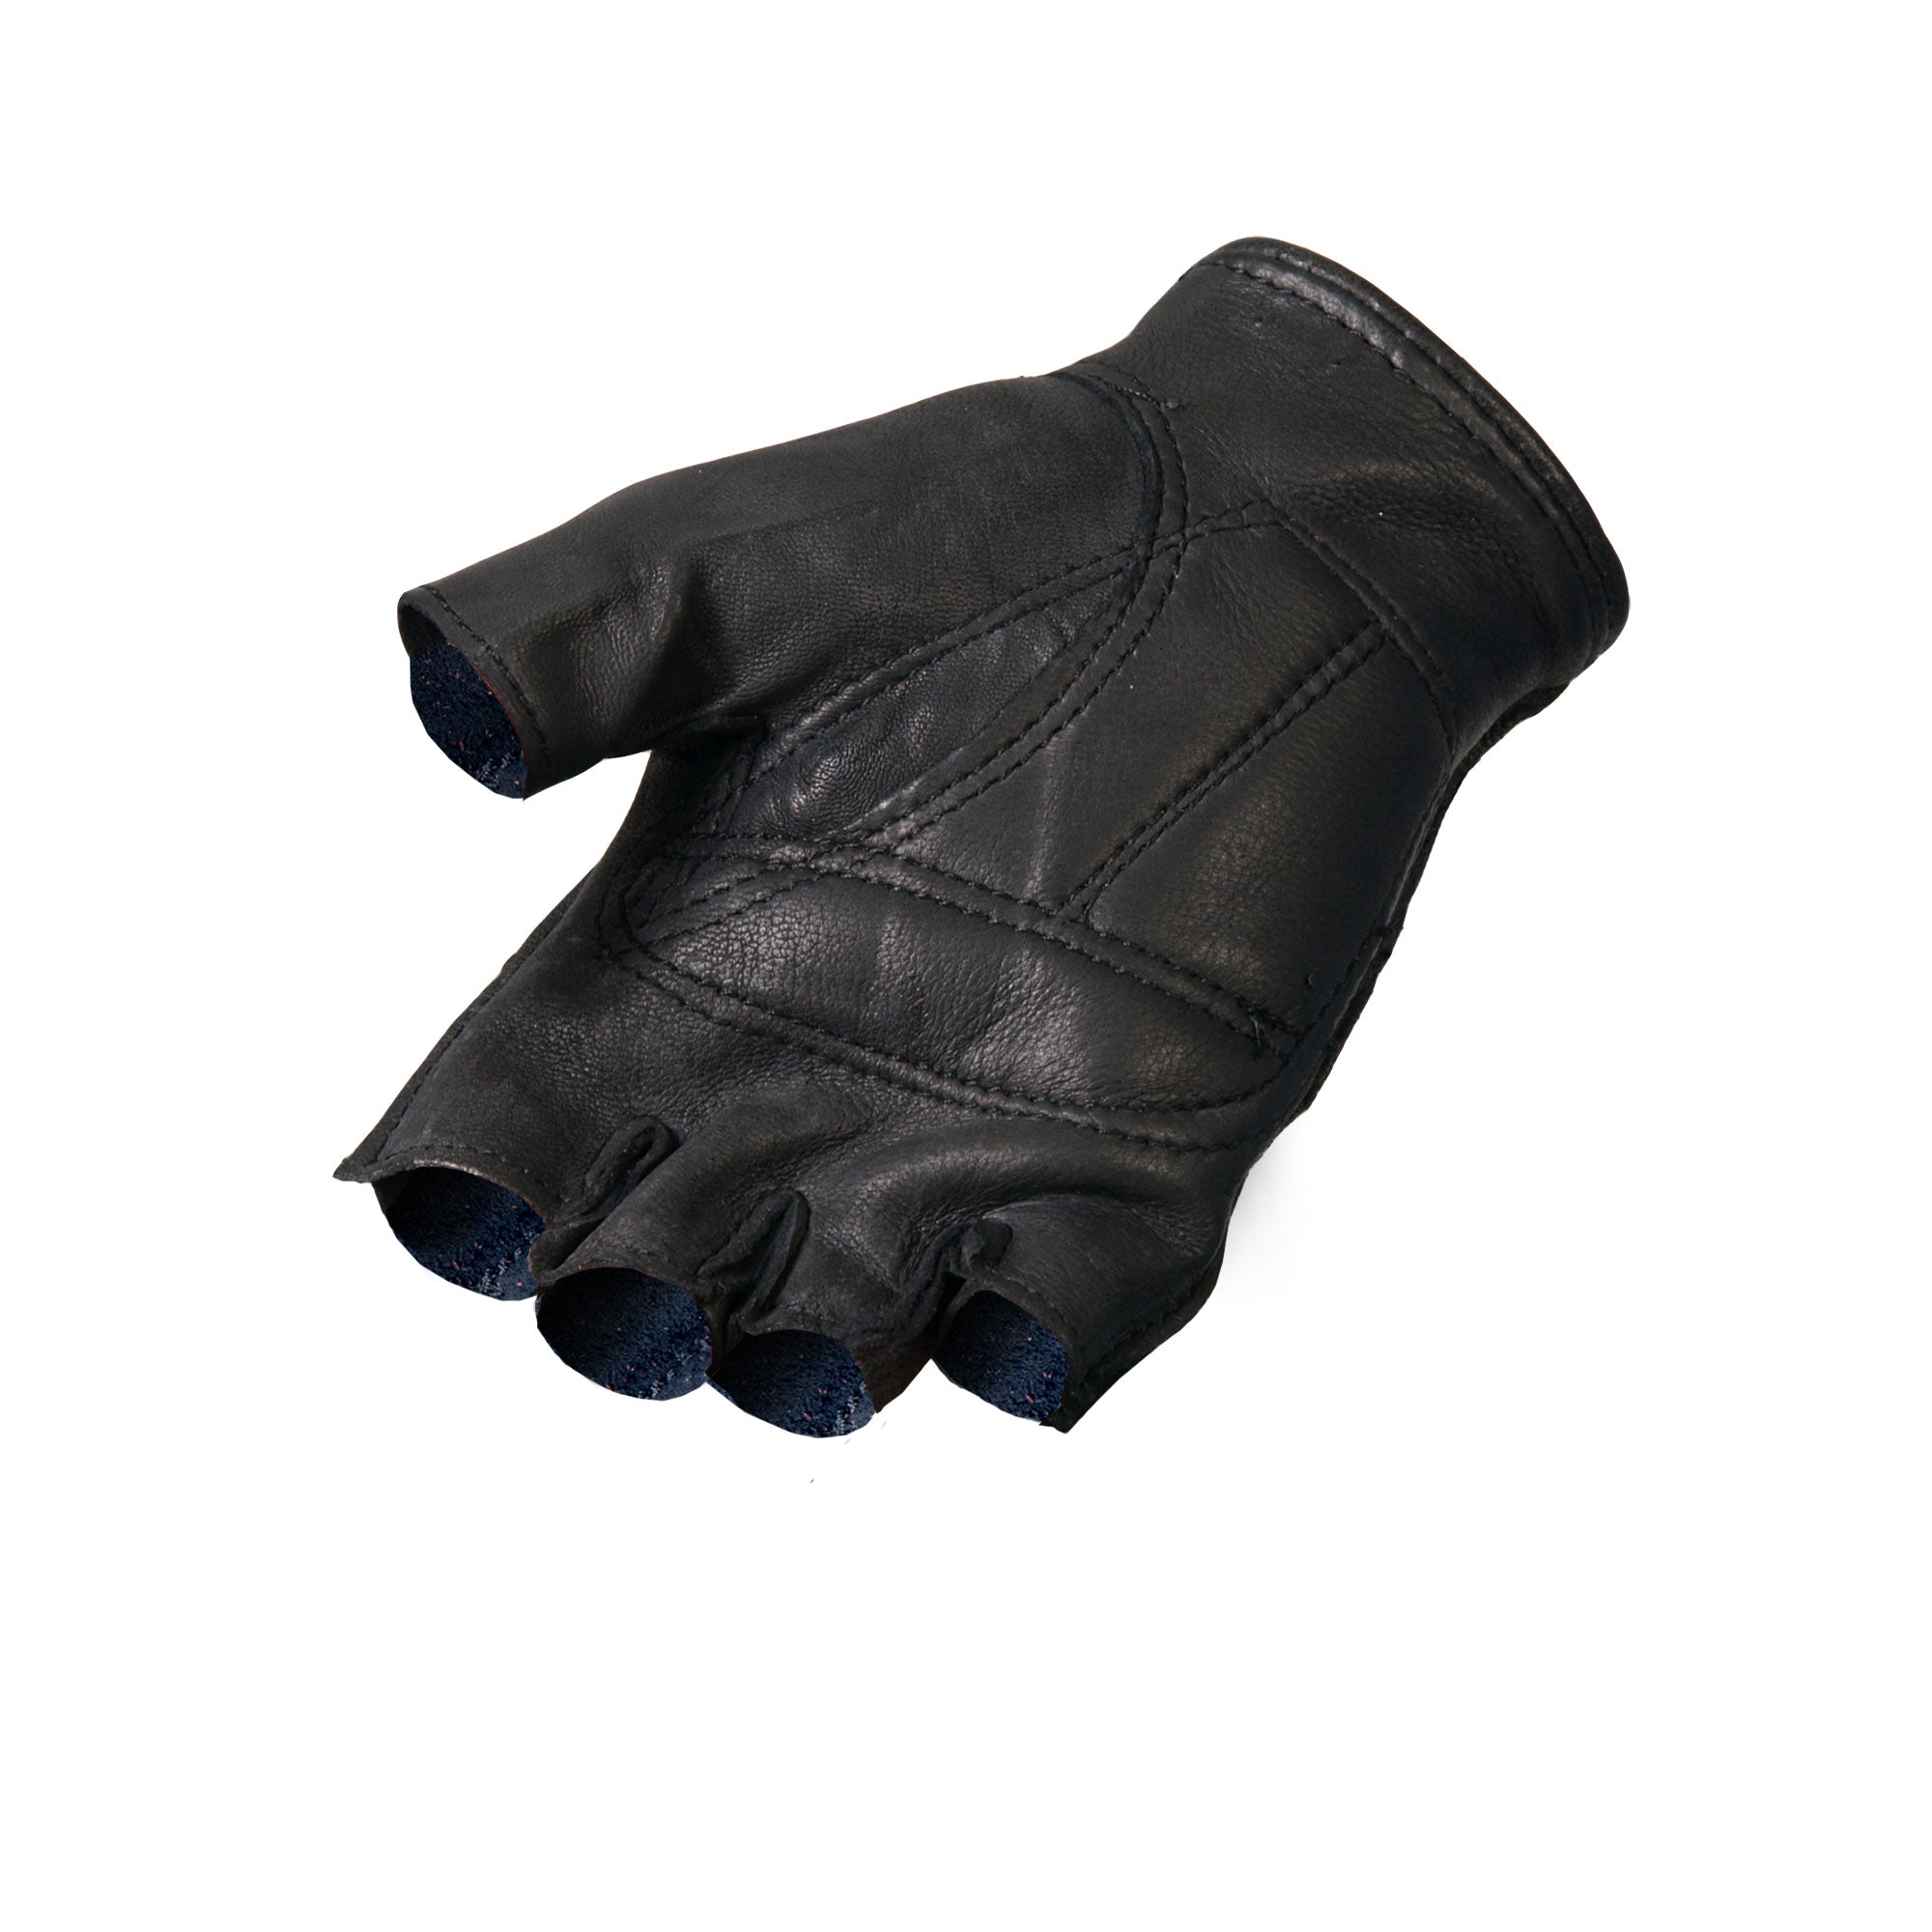 Hot Leathers GVD1005 Deerskin Fingerless Gloves